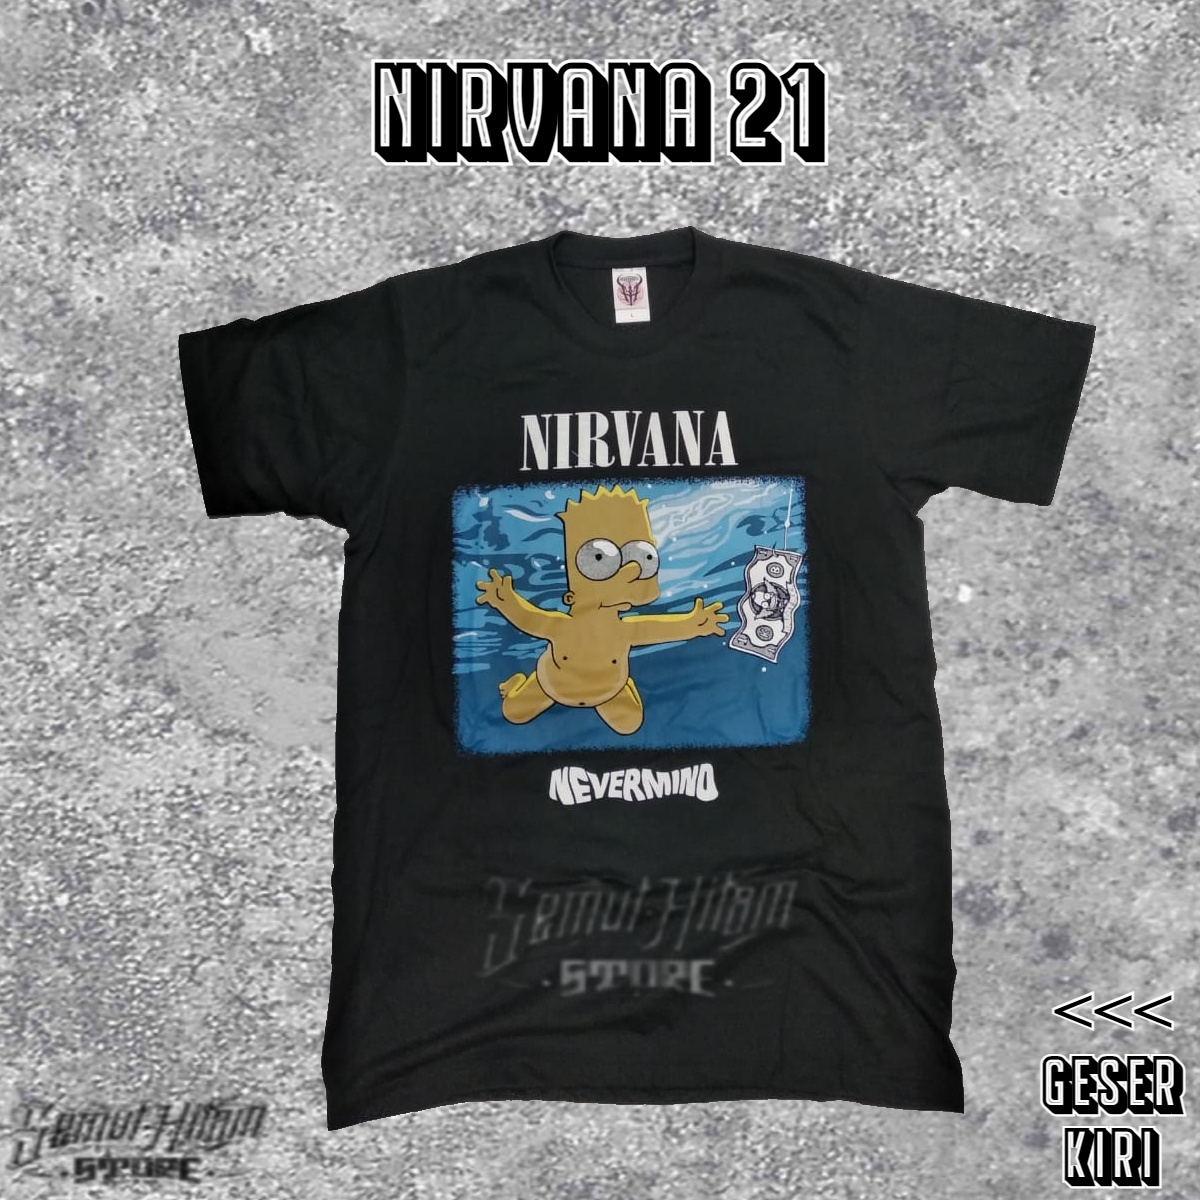 Nirvana nevermind simpsons